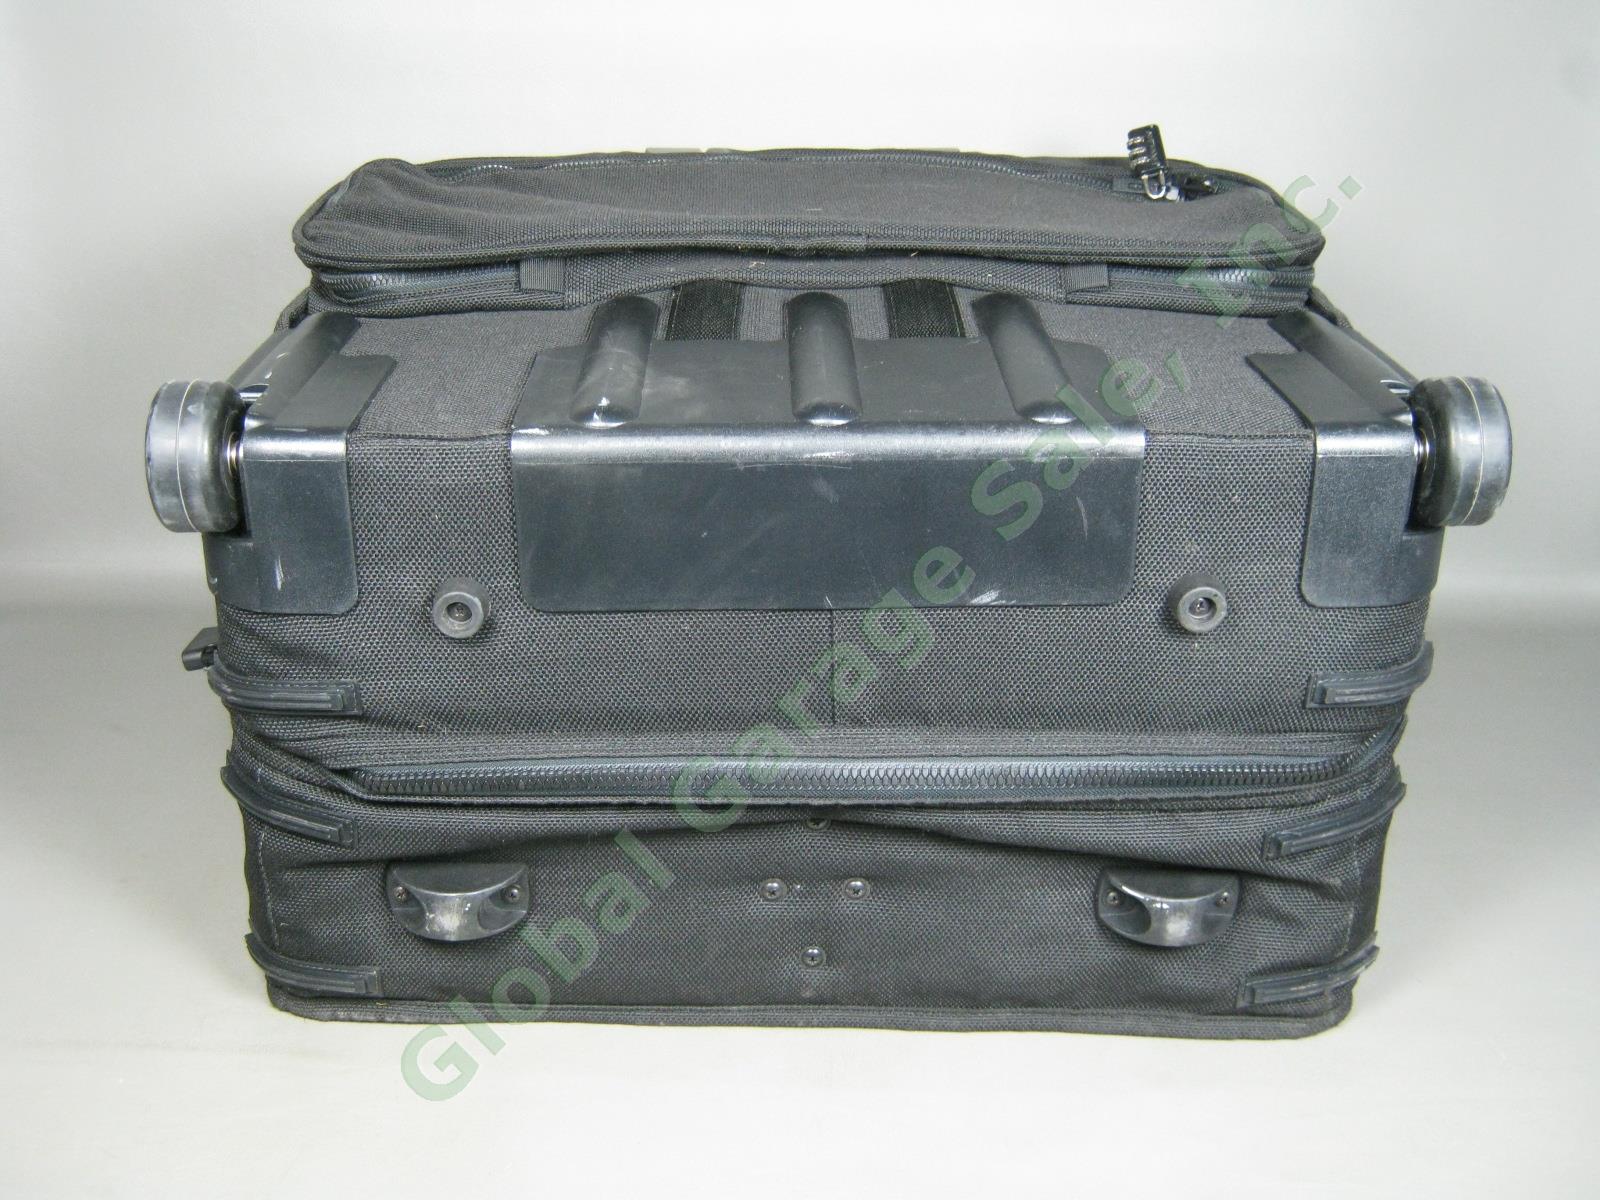 Andiamo Valoroso Wheeled Wardrobe Garment Bag Black Luggage 25x24x16 Exc Cond! 10